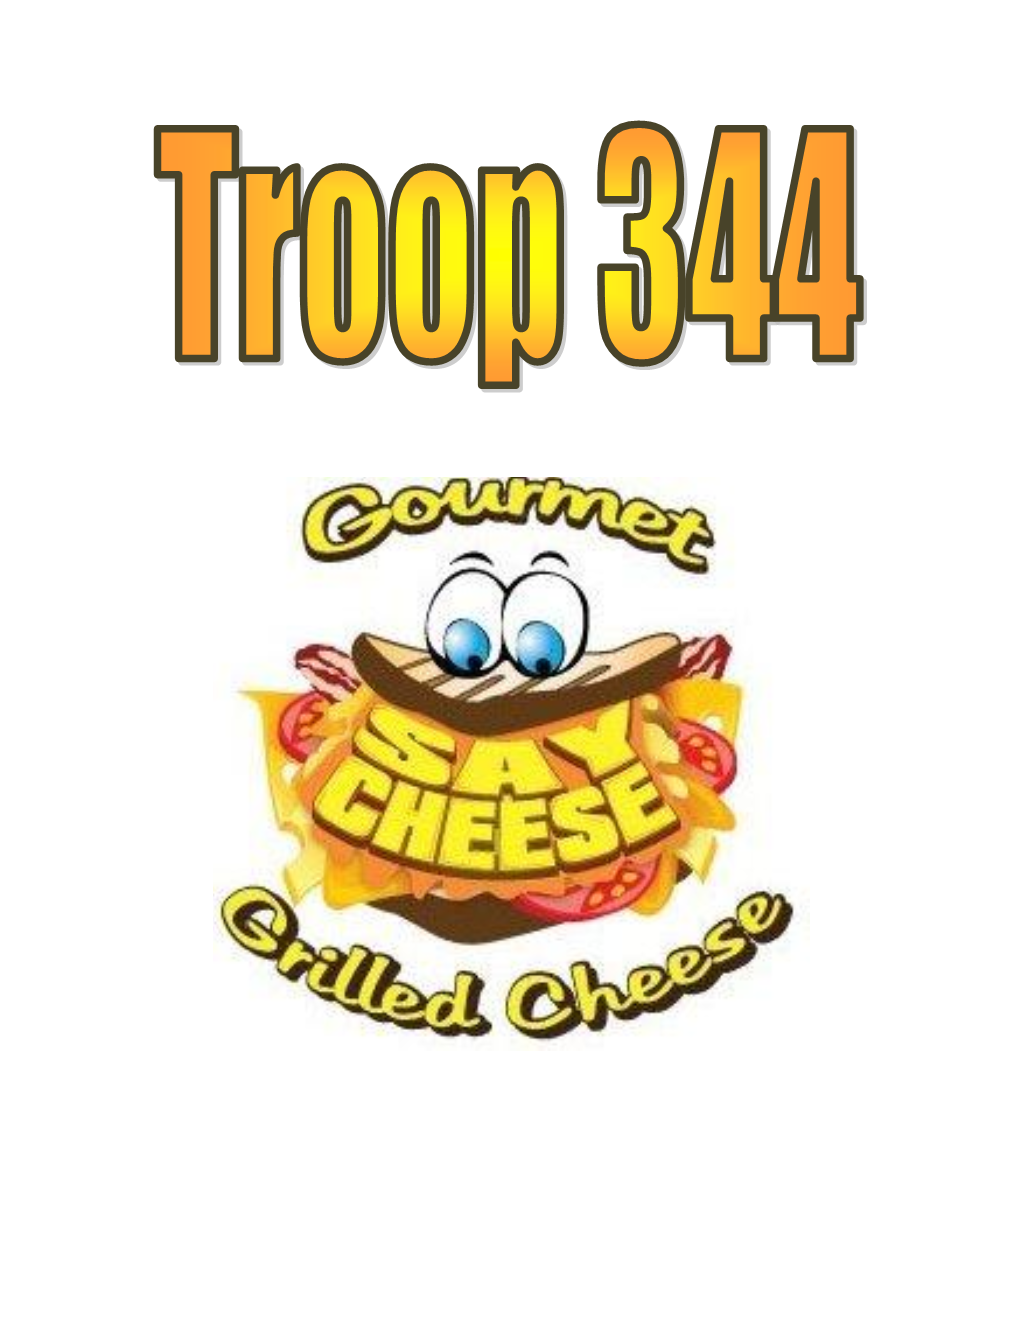 Troop 344/9344 Gourmet Grilled Cheese